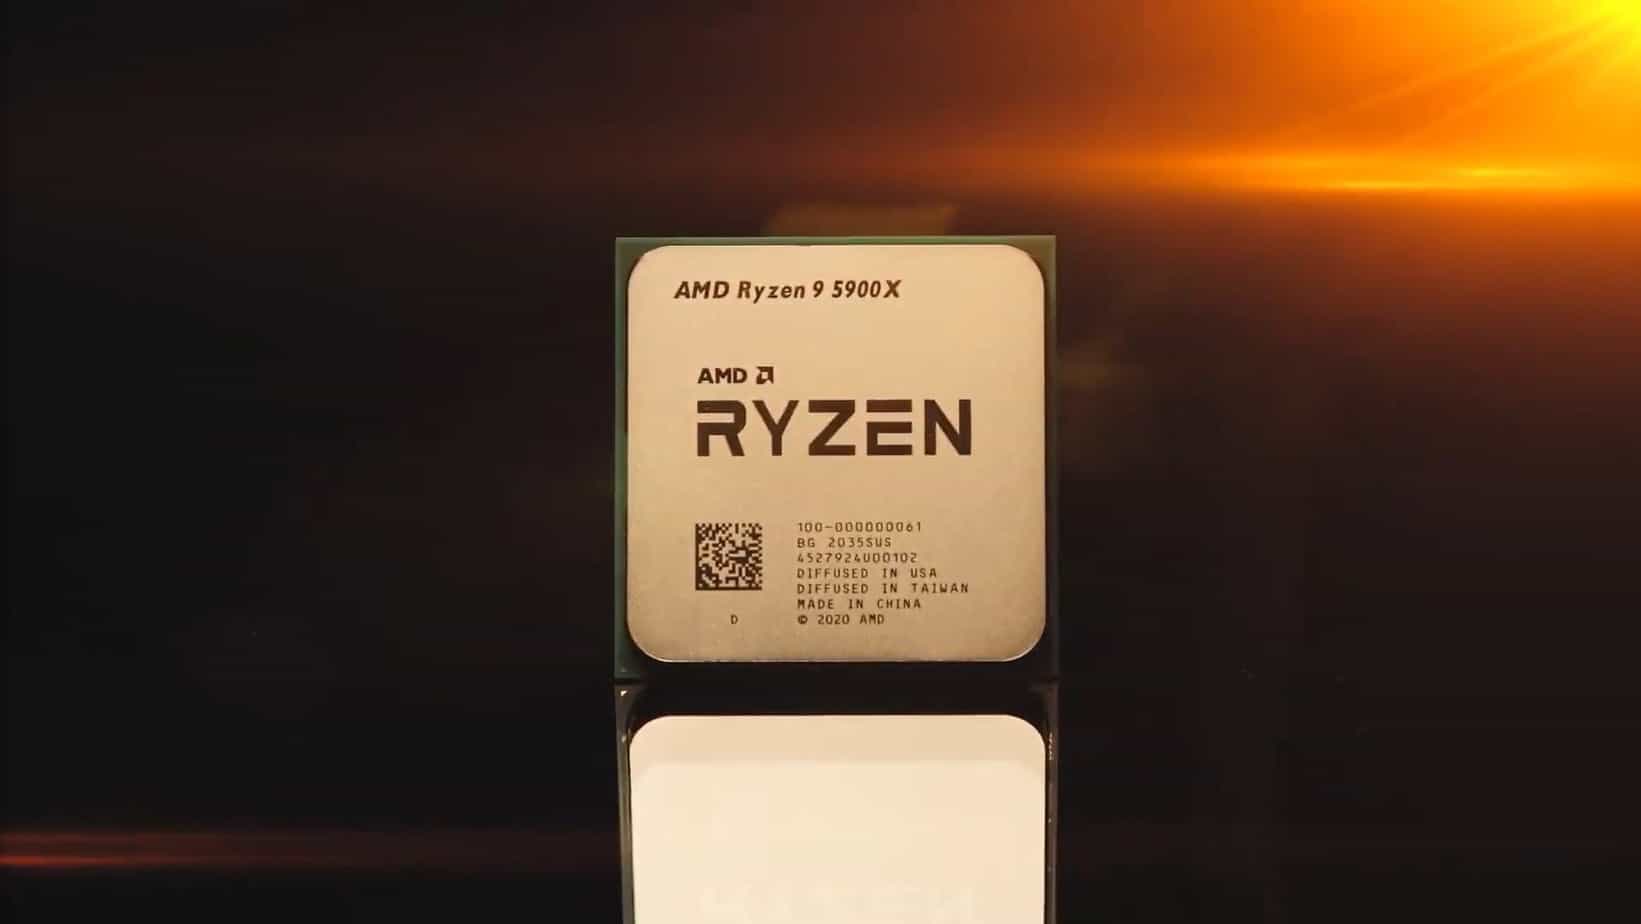 AMD Ryzen 9 5900X review: Waanzinnige sprong in prestaties - TechPulse